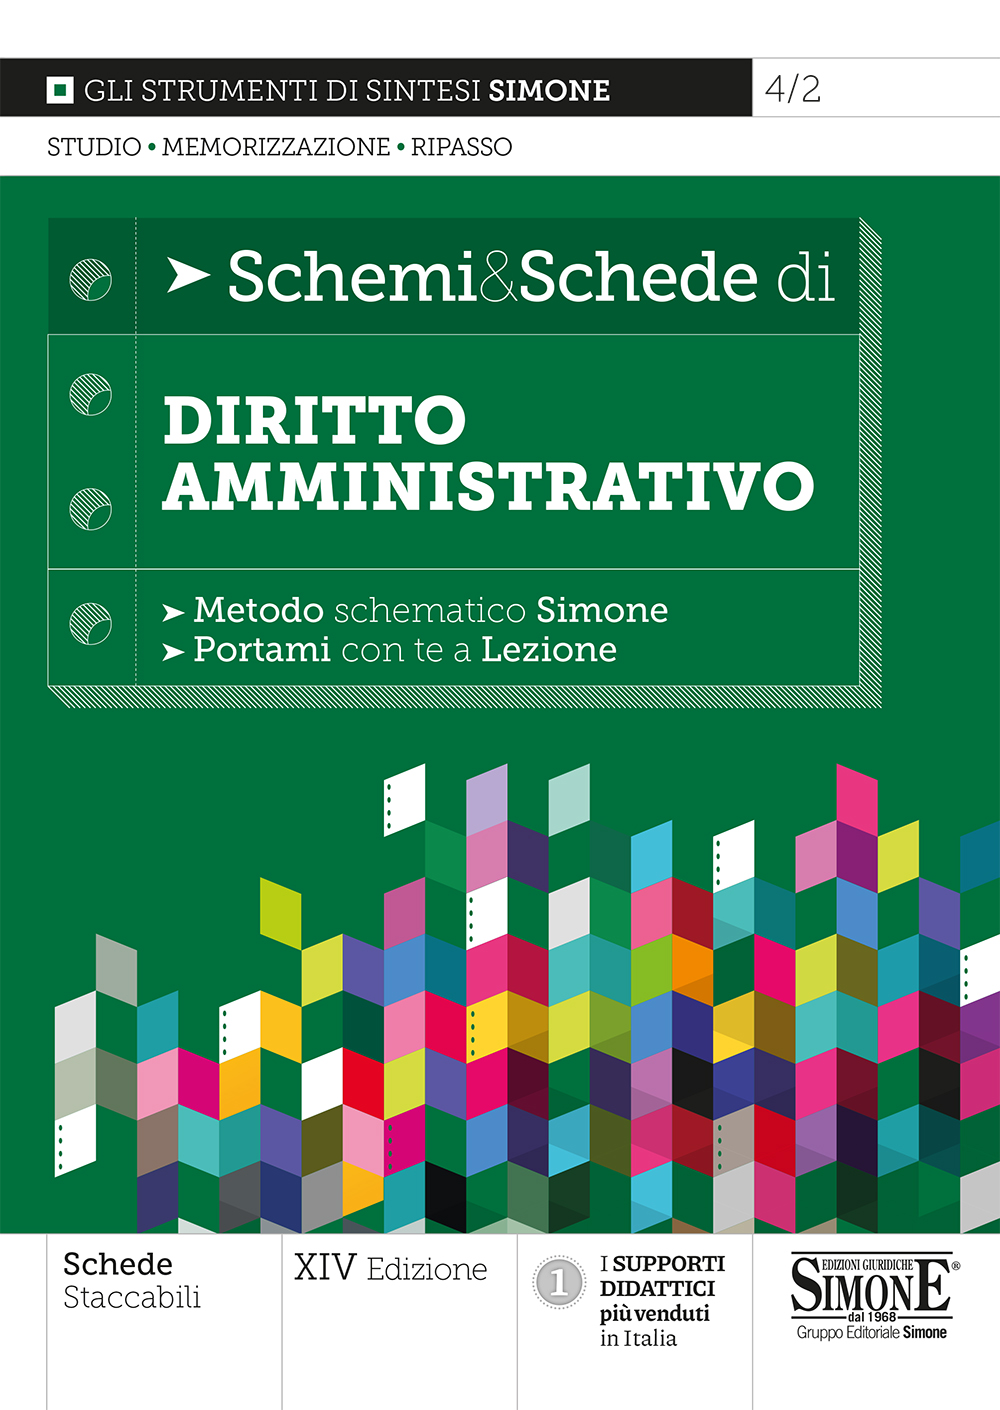 Schemi & Schede di Diritto Amministrativo - 4/2